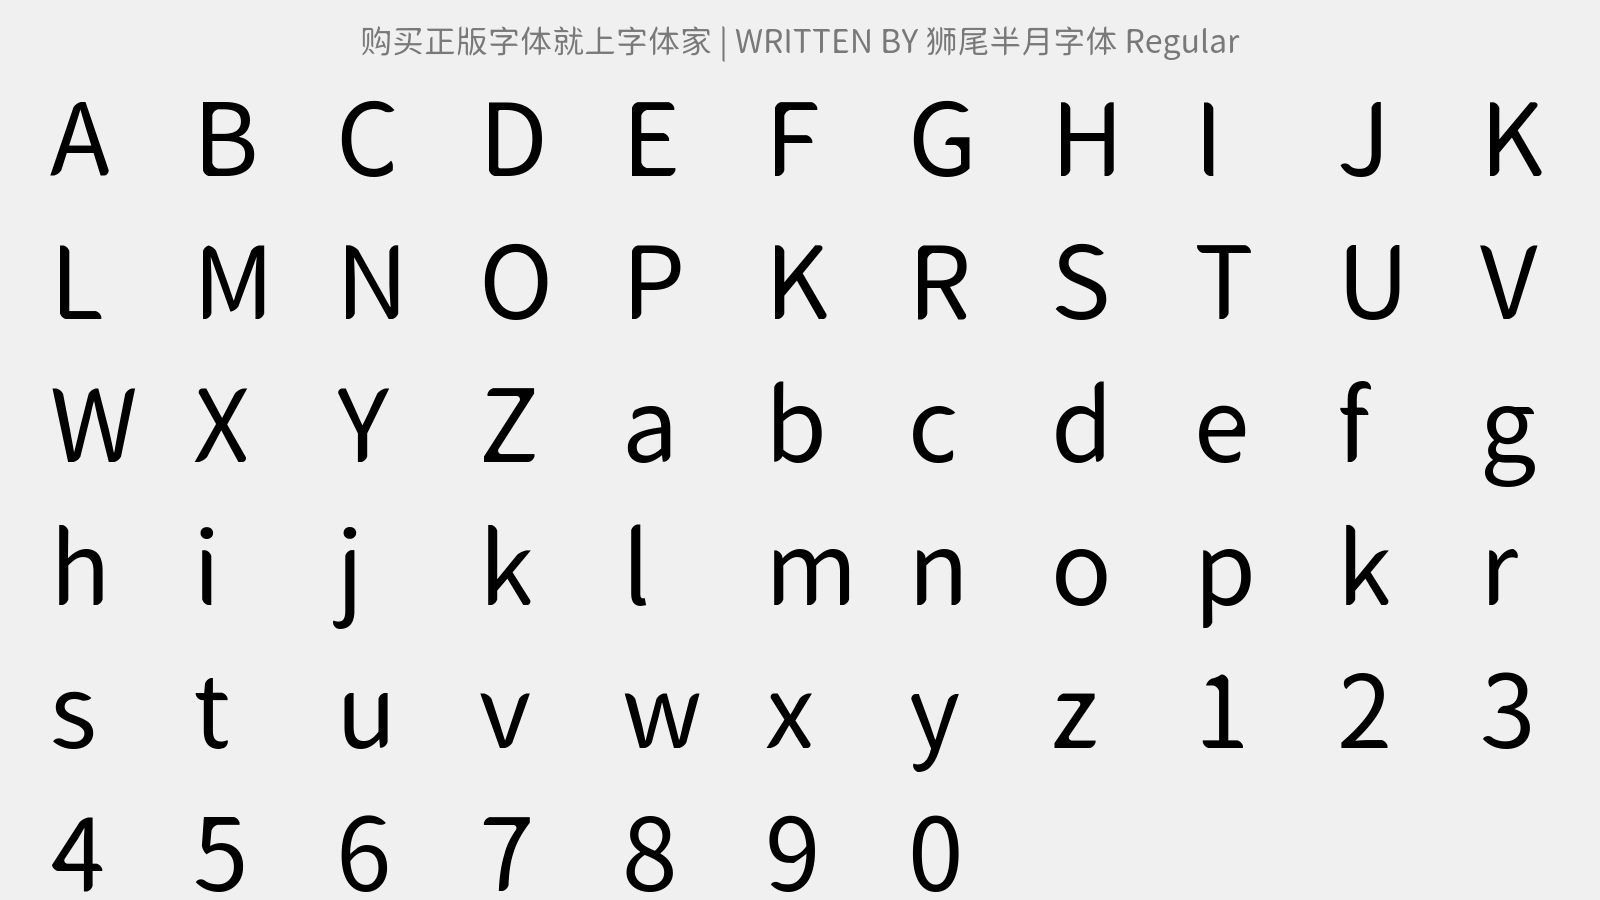 狮尾半月字体 Regular - 大写字母/小写字母/数字